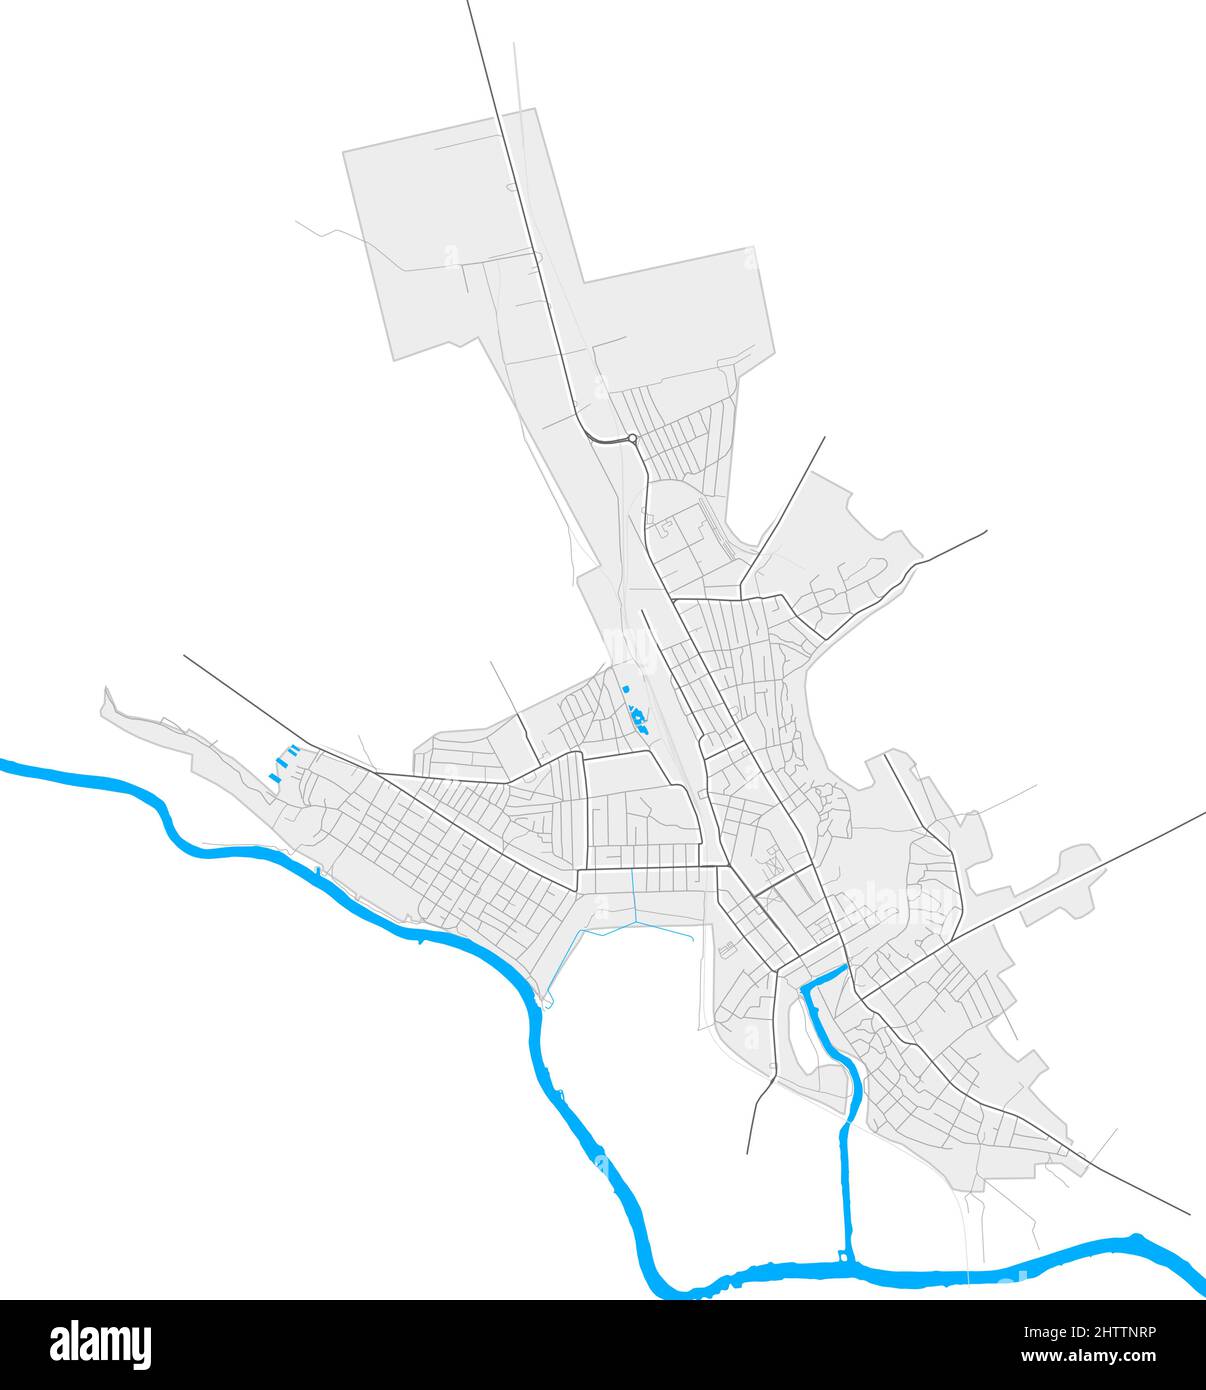 Voznesensk, Oblast Mykolaiv, Ukraine hochauflösende Vektorkarte mit Stadtgrenzen und umrissenen Pfaden. Weiße zusätzliche Umrisse für Hauptstraßen. Mann Stock Vektor